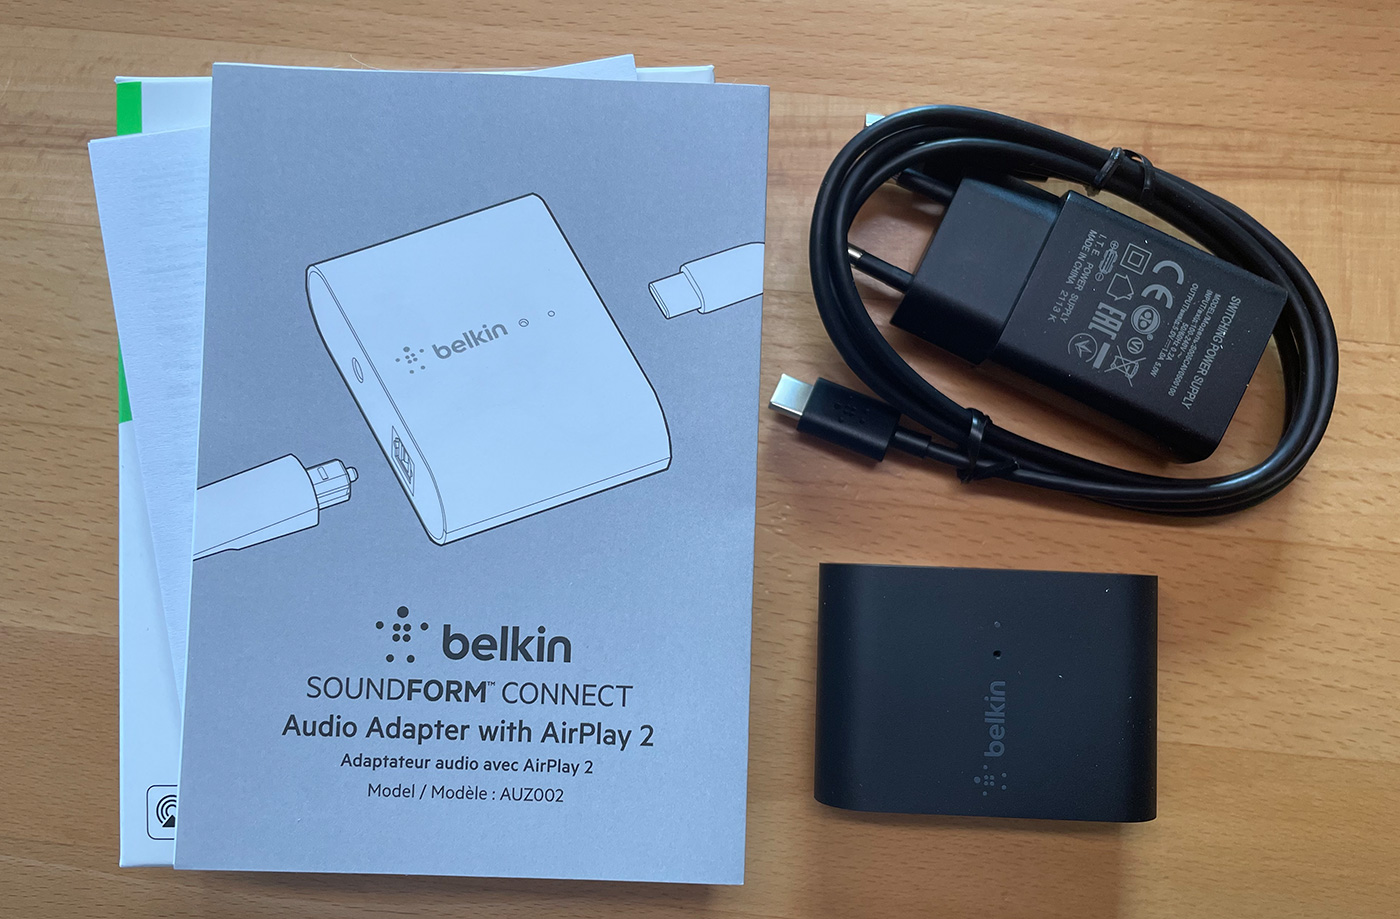 Bundle of Belkin SoundForm Connect